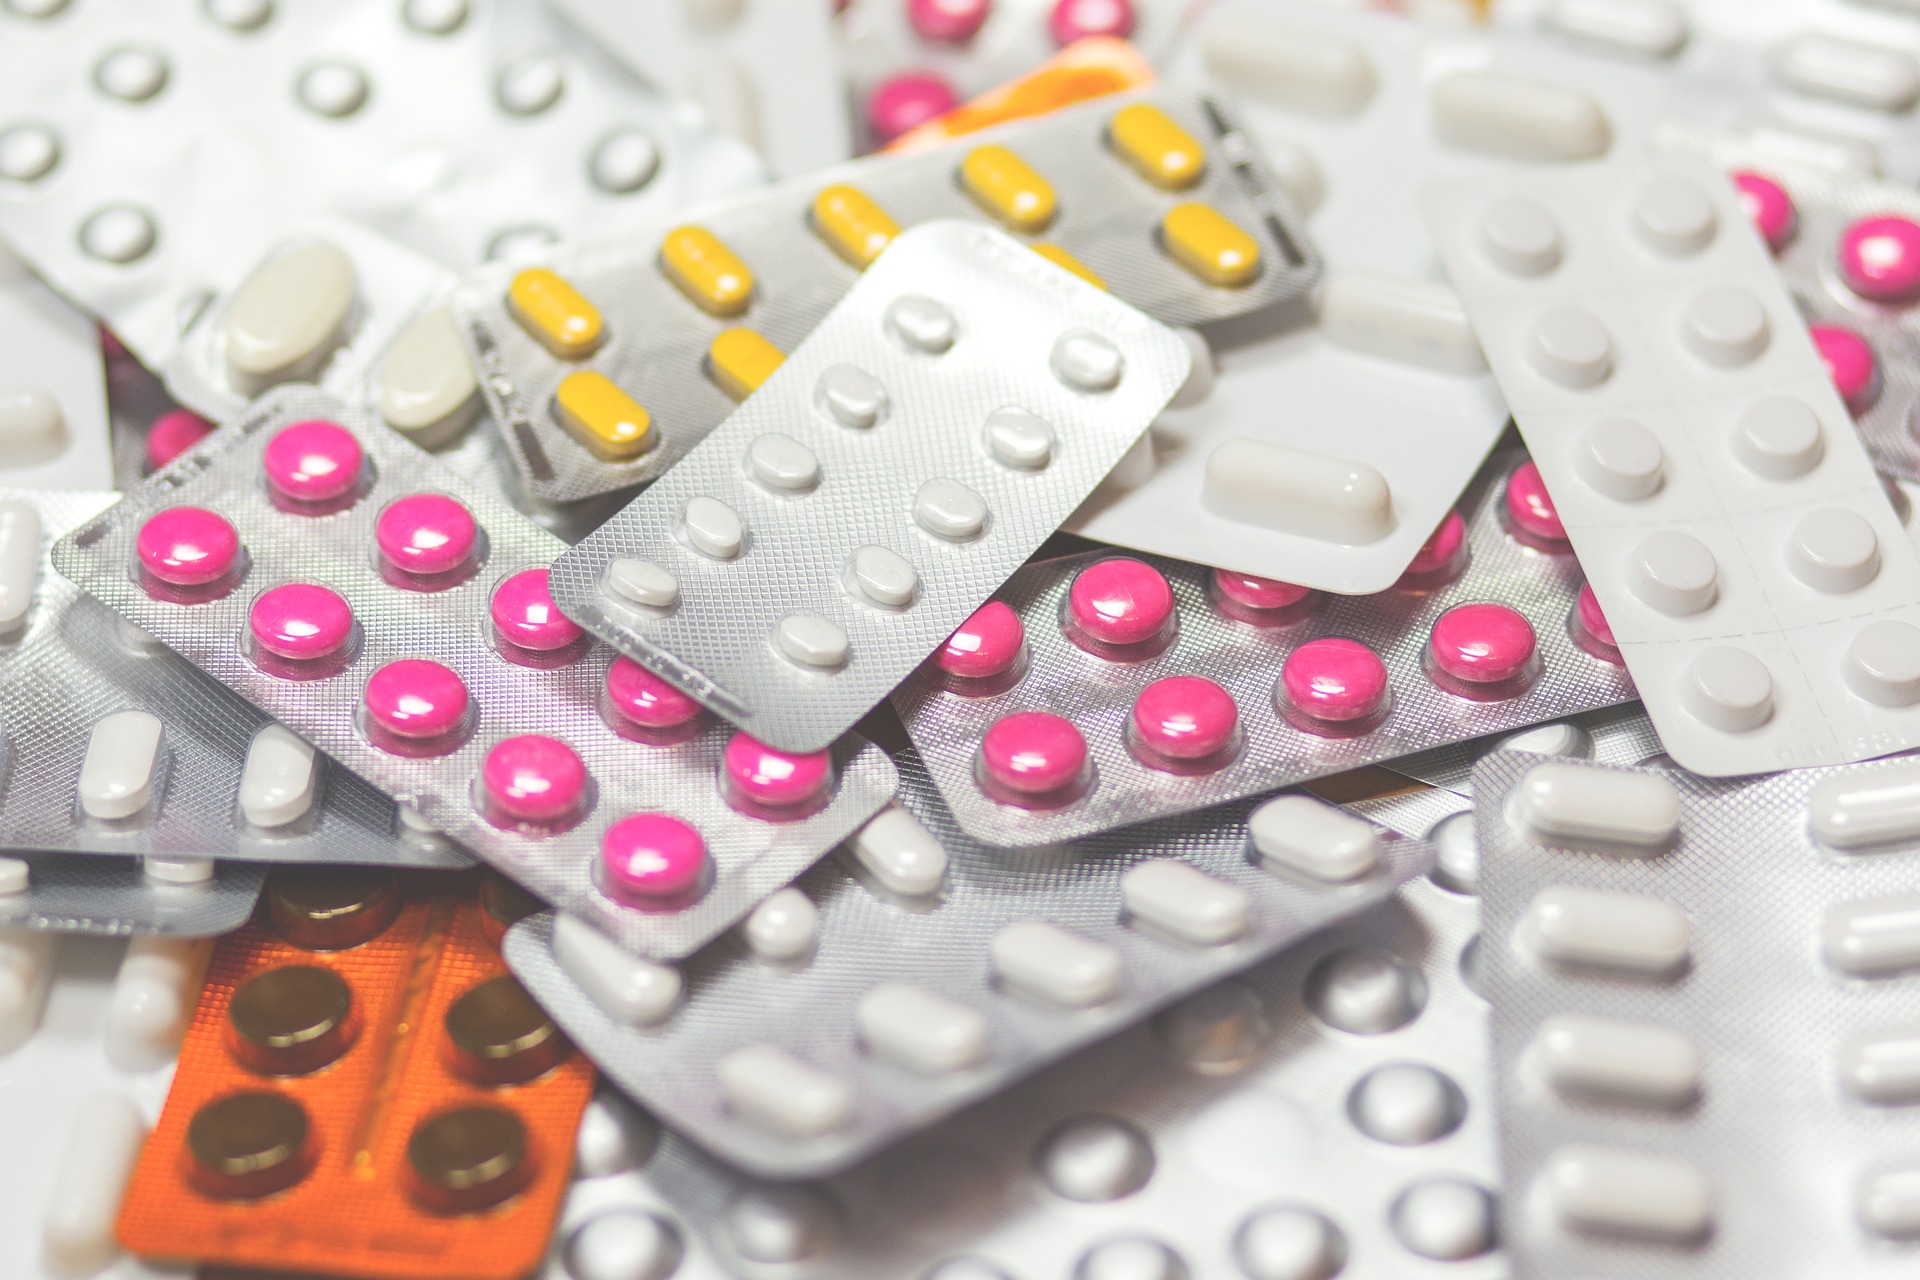 Carenza di farmaci, indicazioni da EMA